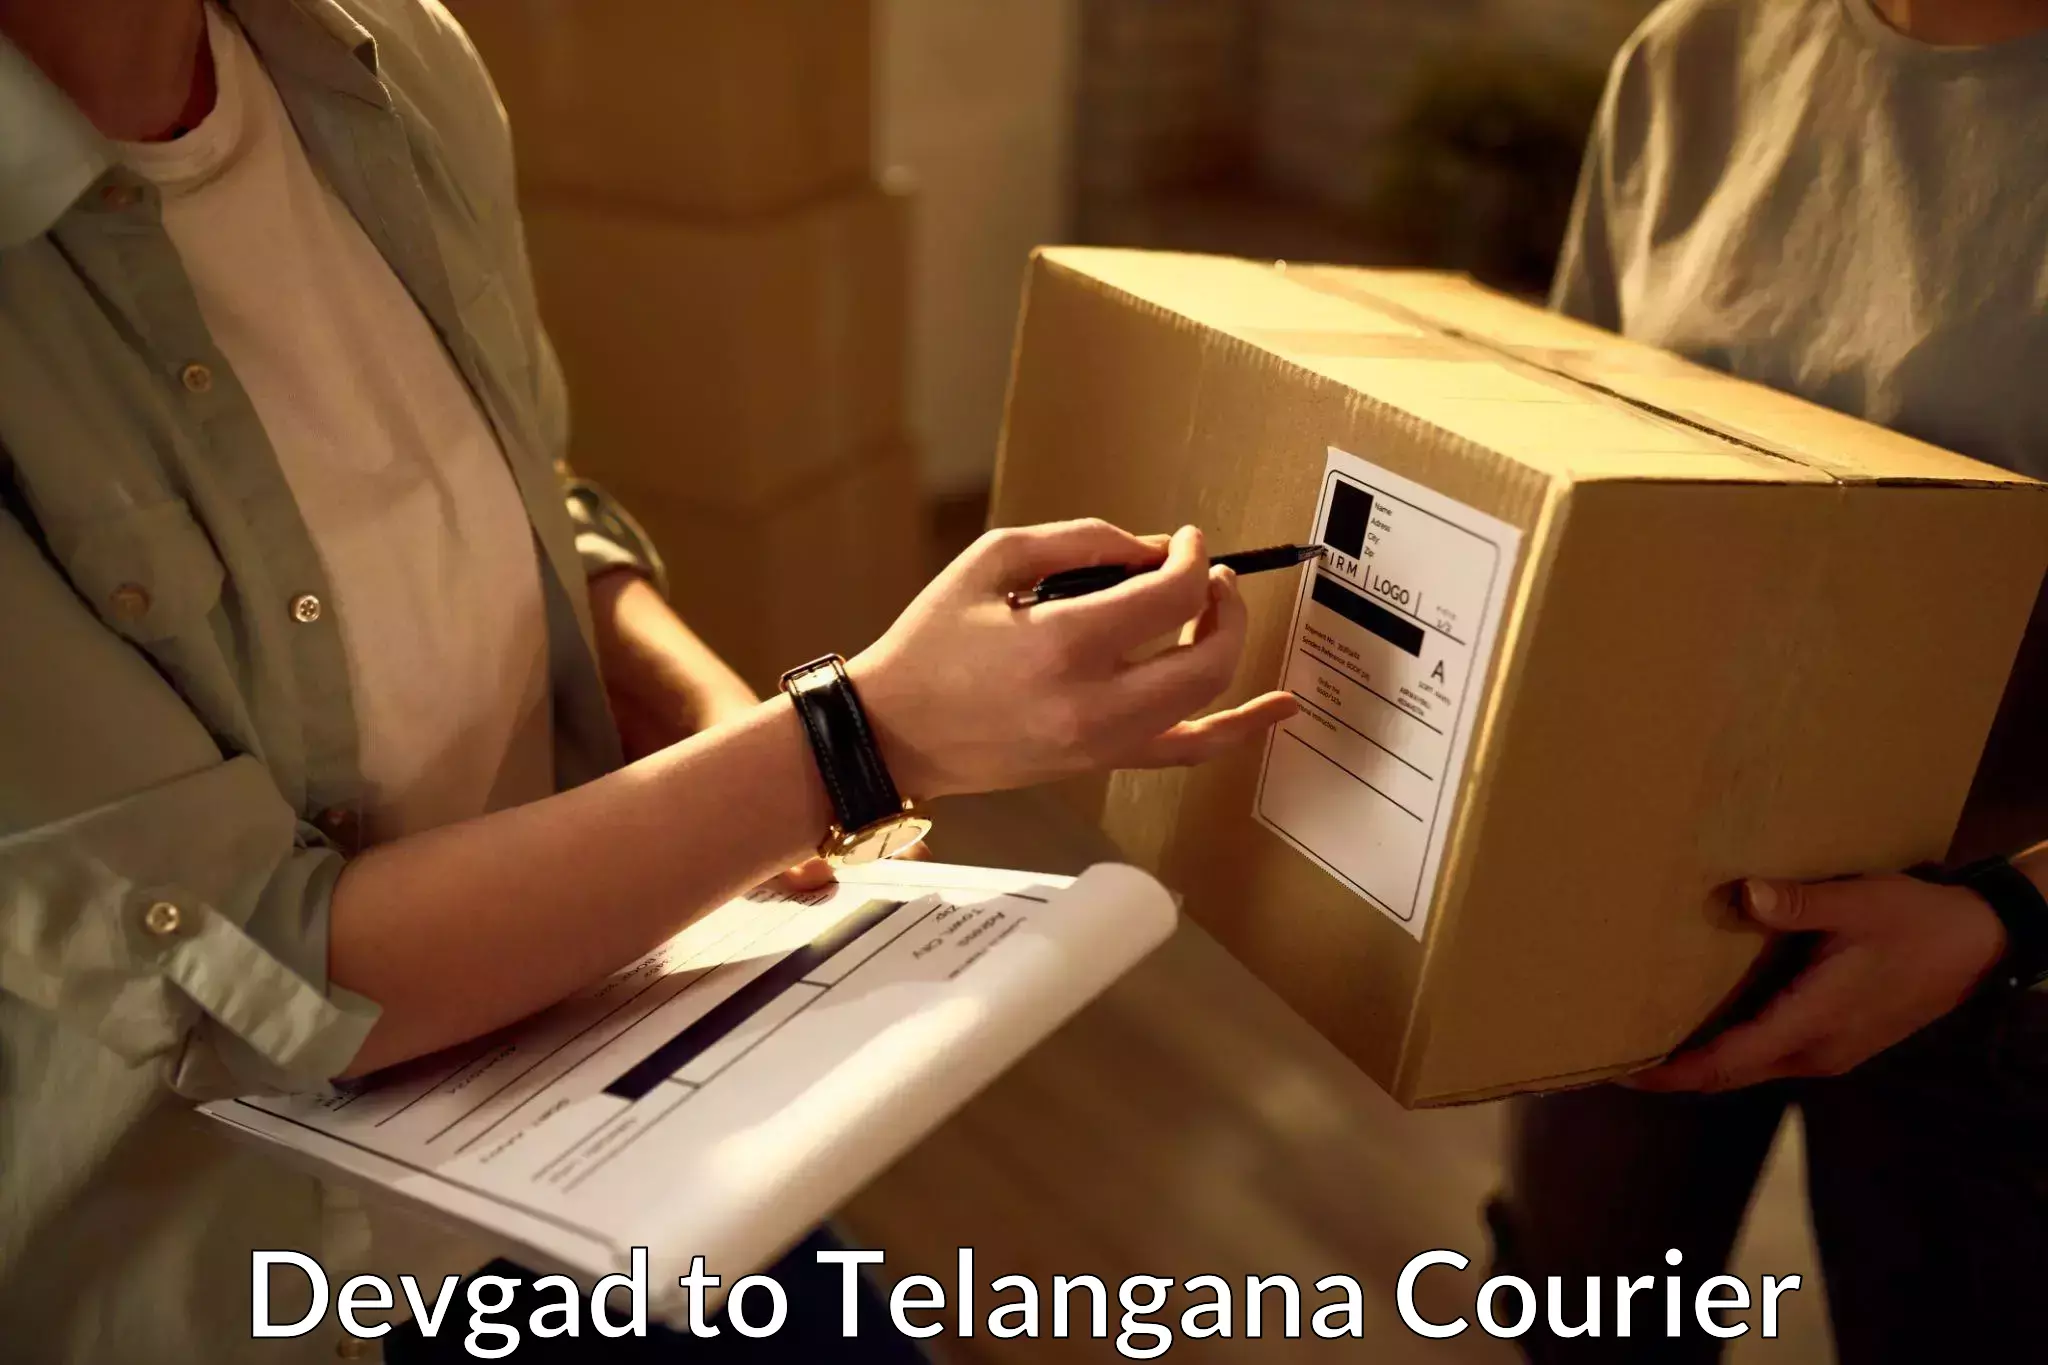 Courier service comparison in Devgad to Yellareddipet